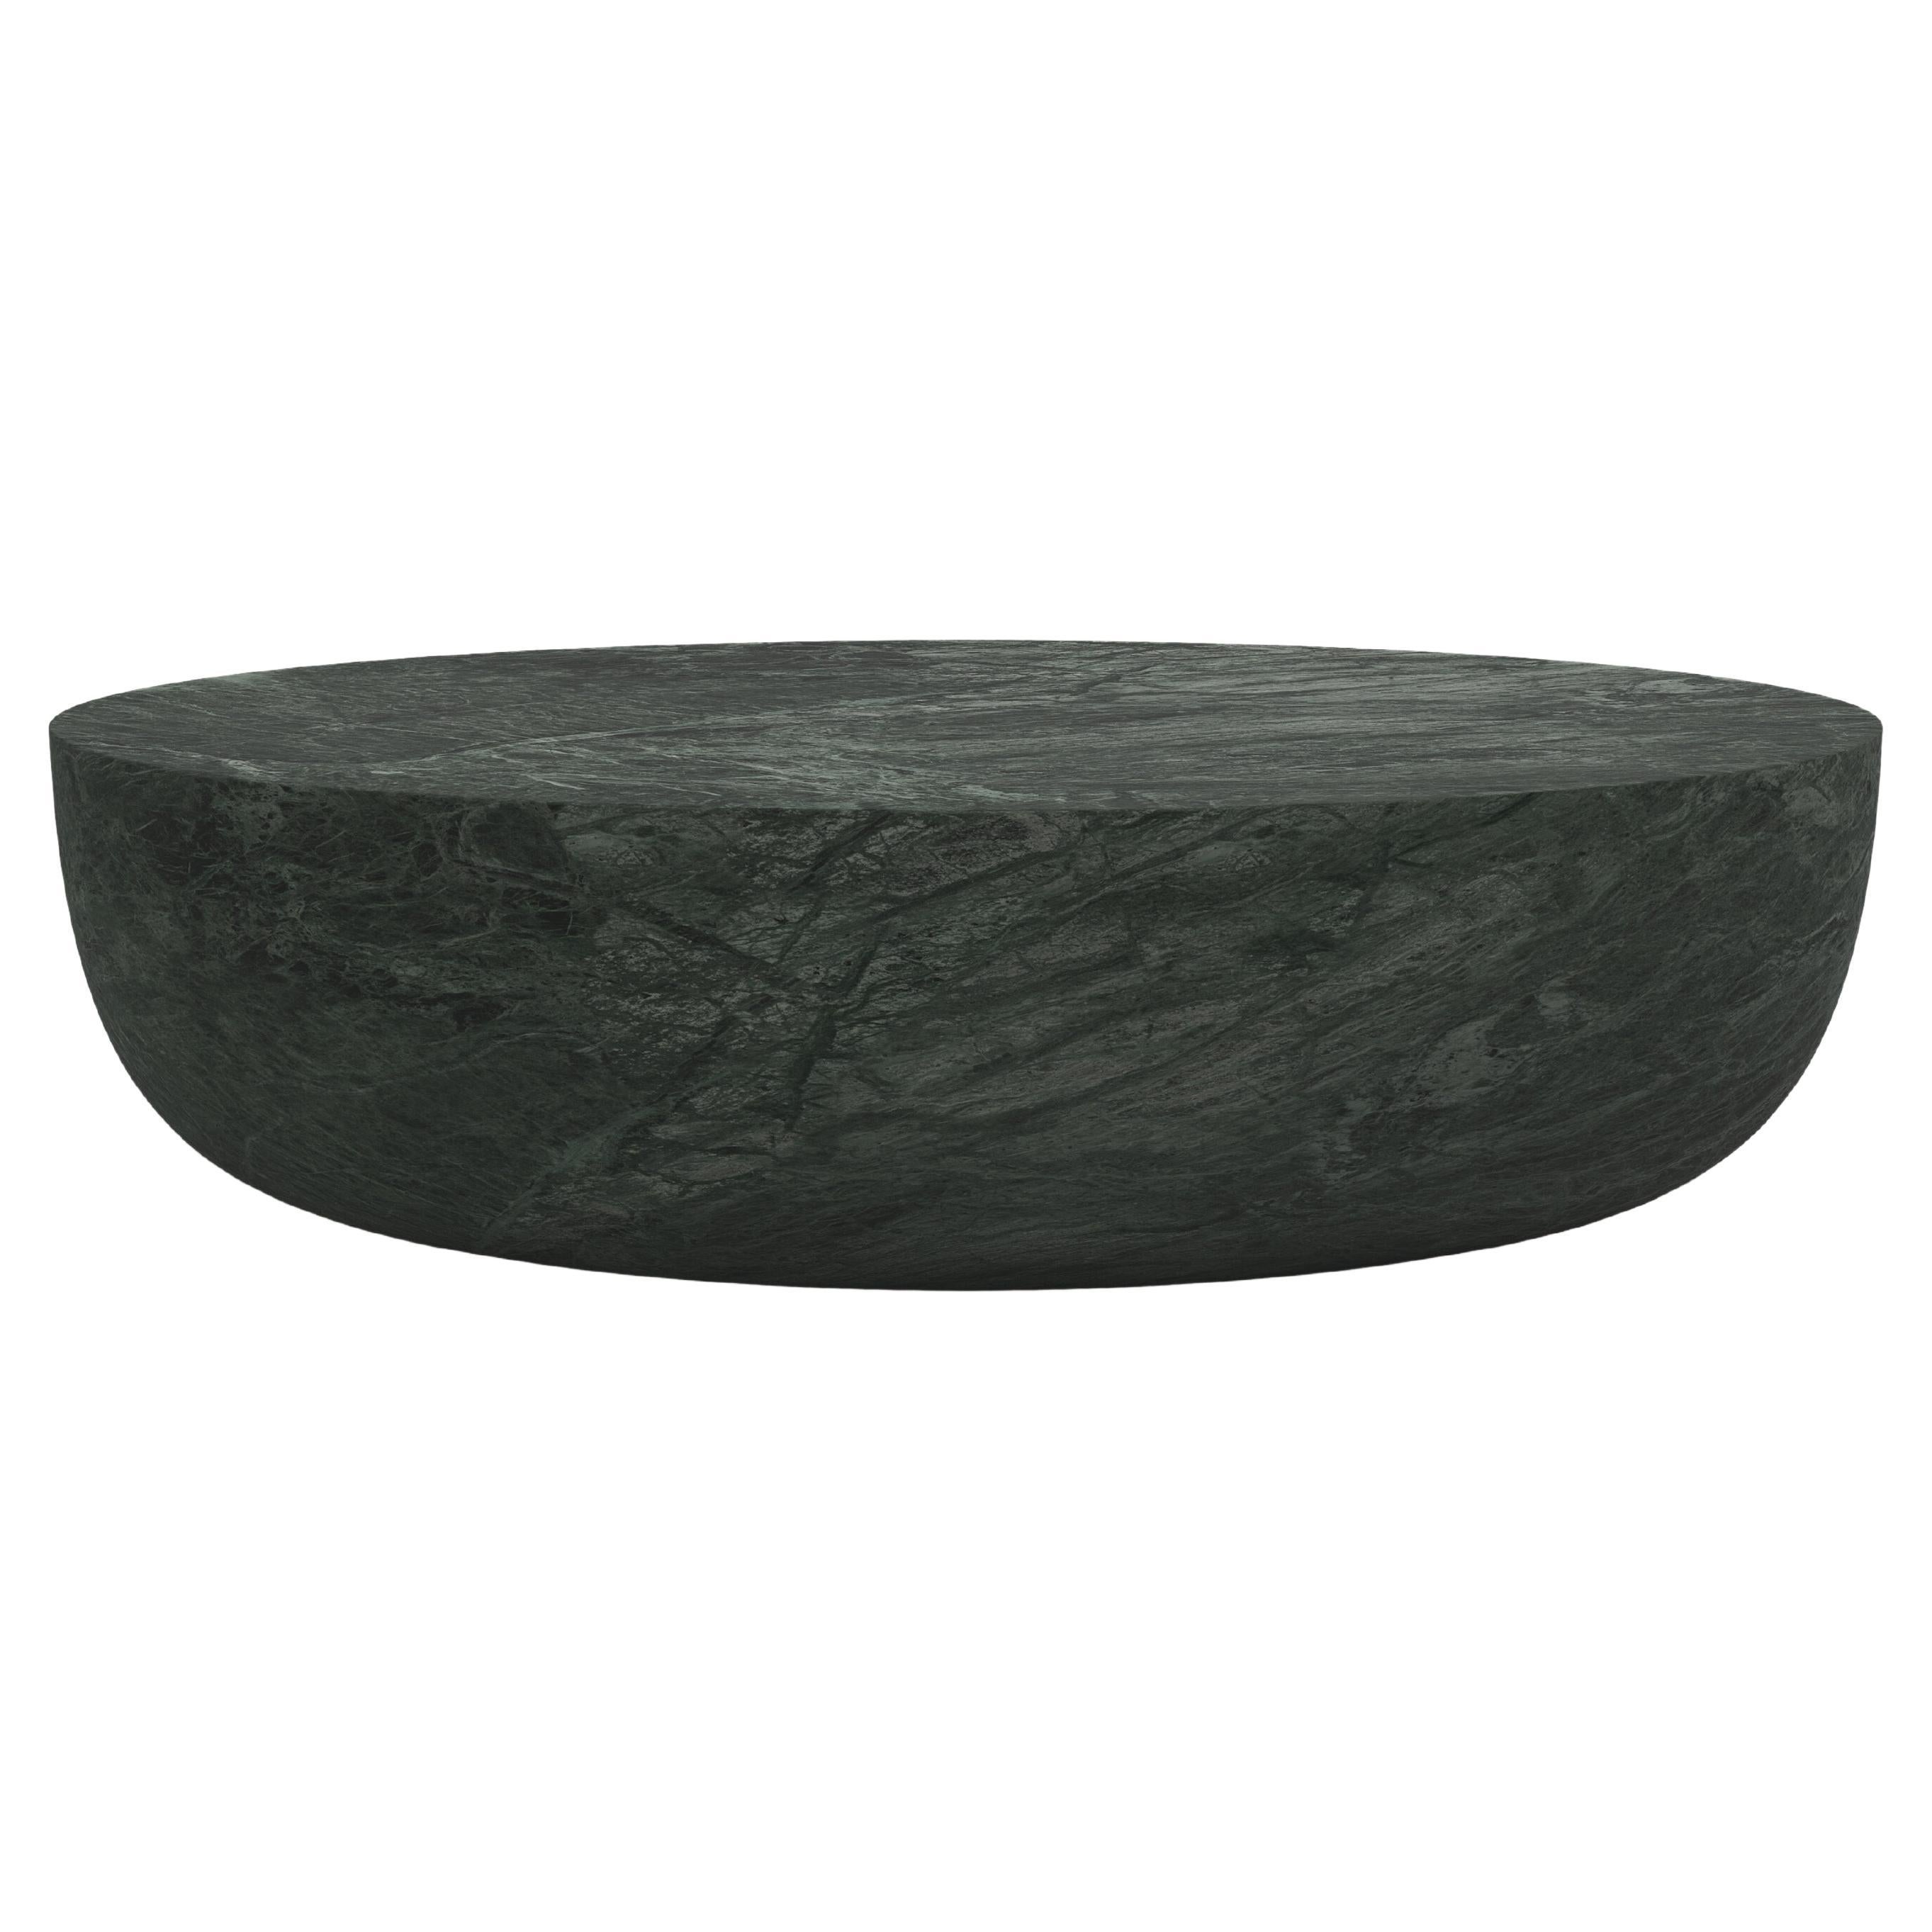 FORM(LA) Sfera Oval Coffee Table 72”L x 48”W x 16”H Verde Guatemala Marble For Sale